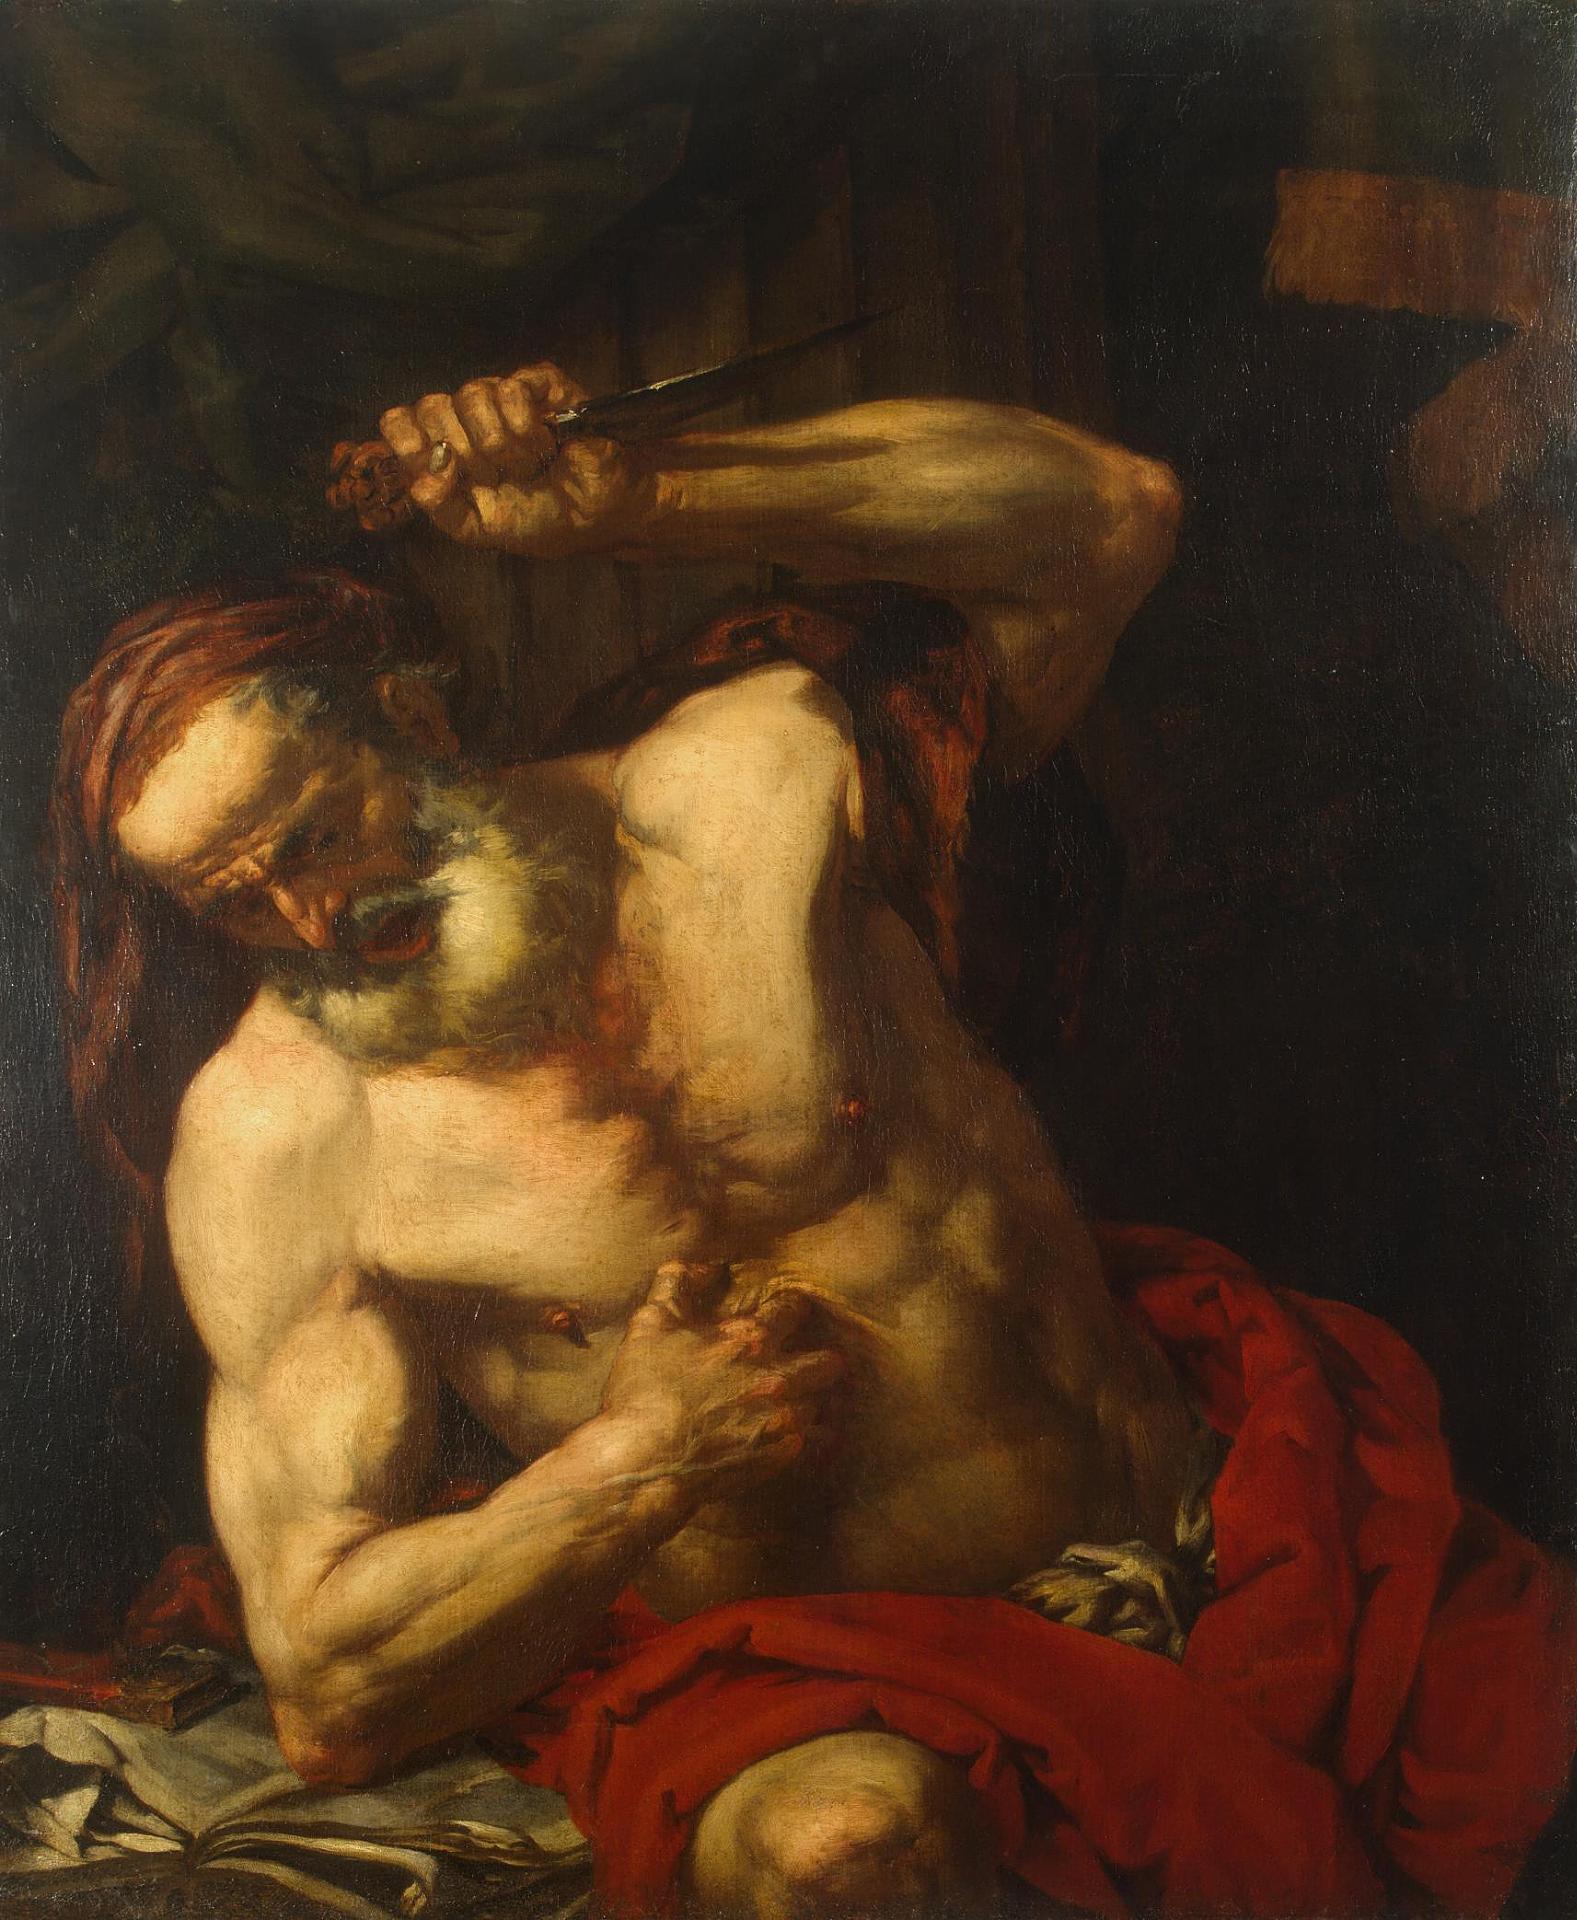 Джованни Баттиста Ланджетти. "Смерть Катона Утического". Около 1670.